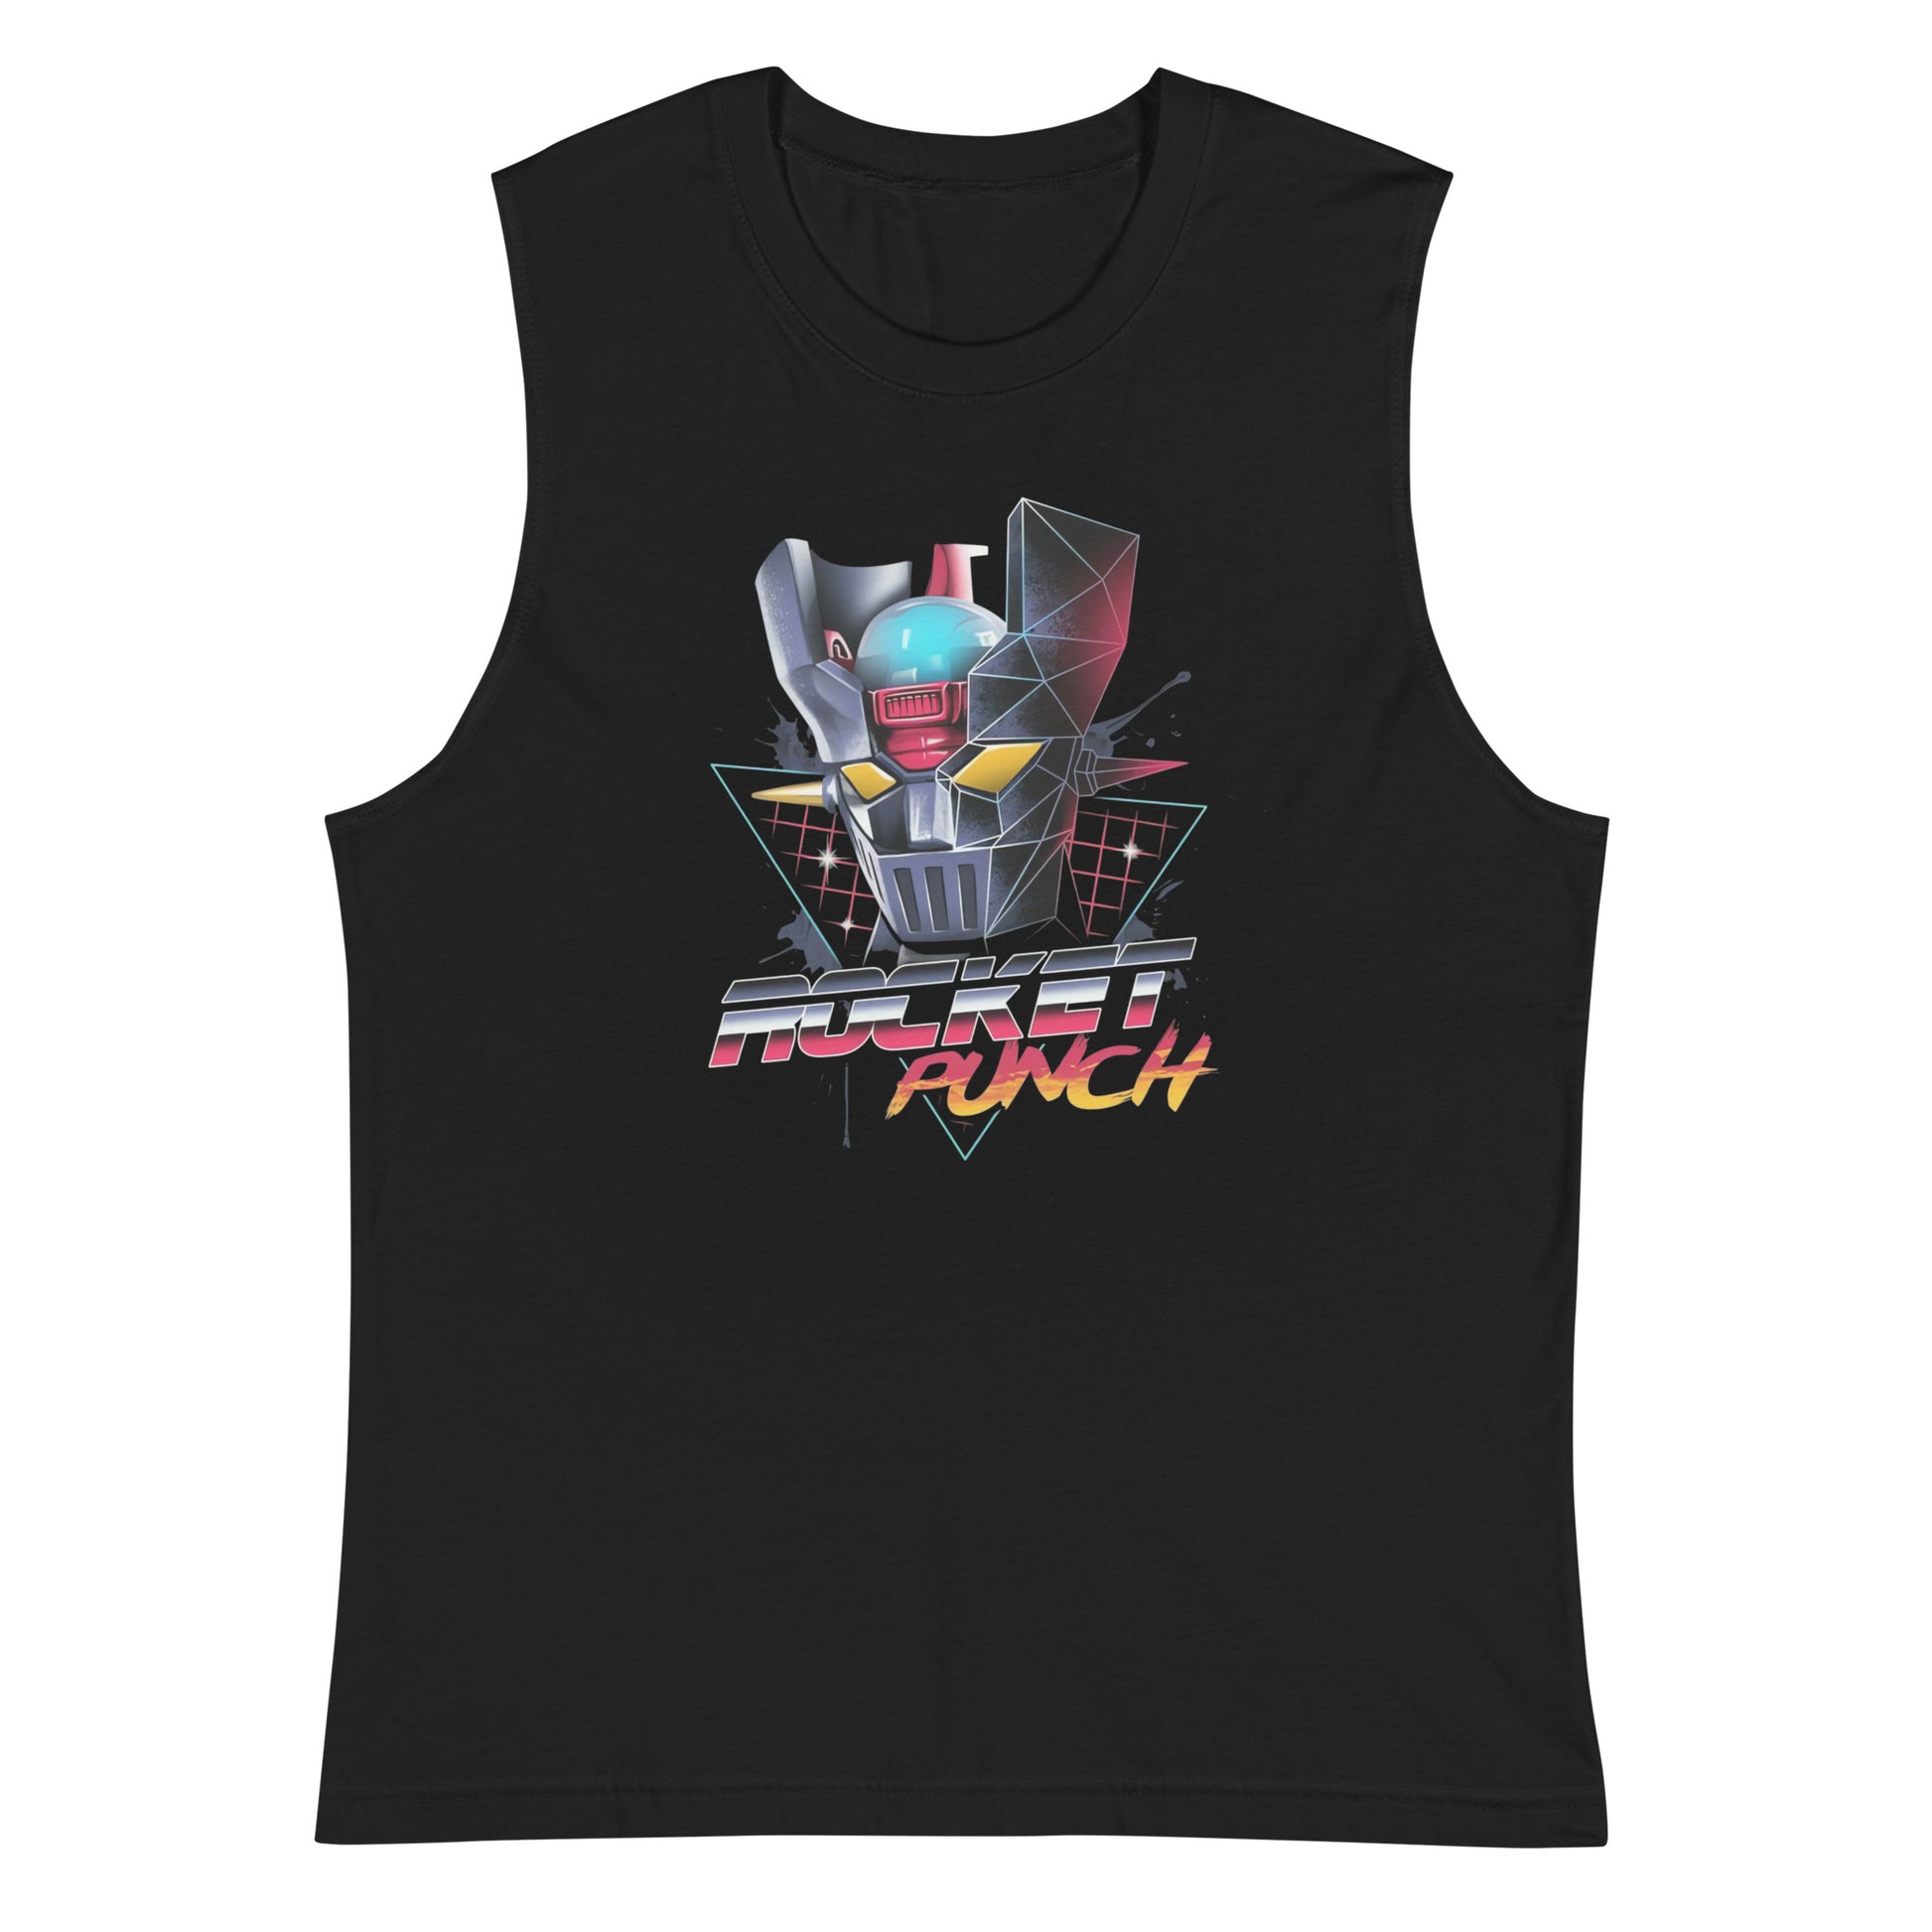 Camiseta sin mangas Rocket Punch, productos de Superstar, encuentra el regalo perfecto en la tienda más genial, con envíos a todo el país. 